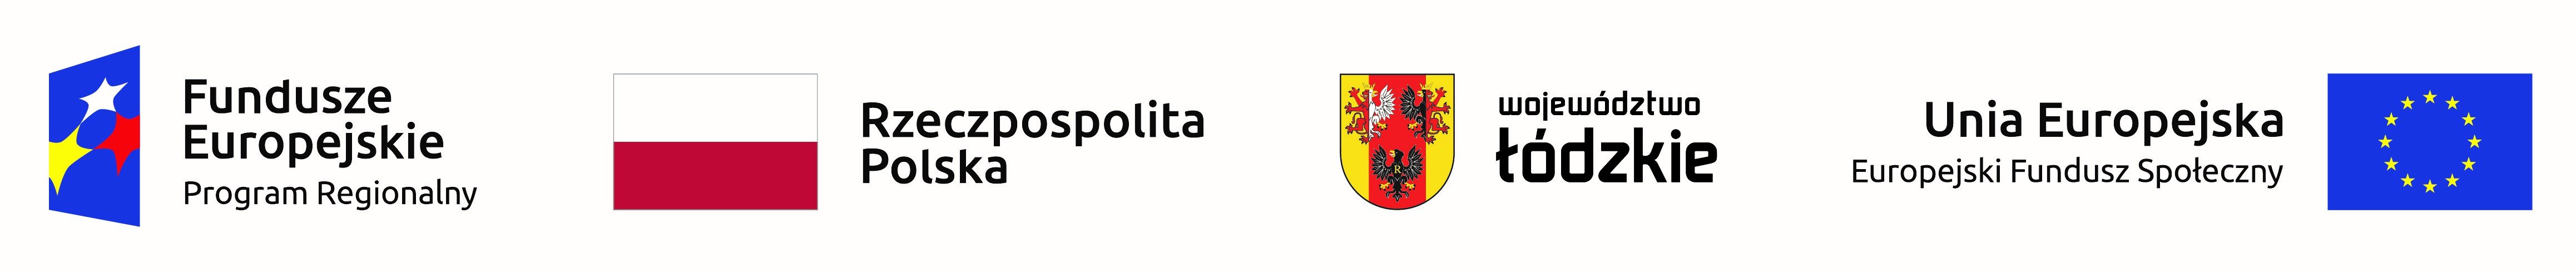 Logotypy następujących podmiotów: Fundusze Europejskie - Program Regionalny, Rzeczpospolita Polska, Województwo łódzkie, Unia Europejska - Europejski Fundusz Społeczny 